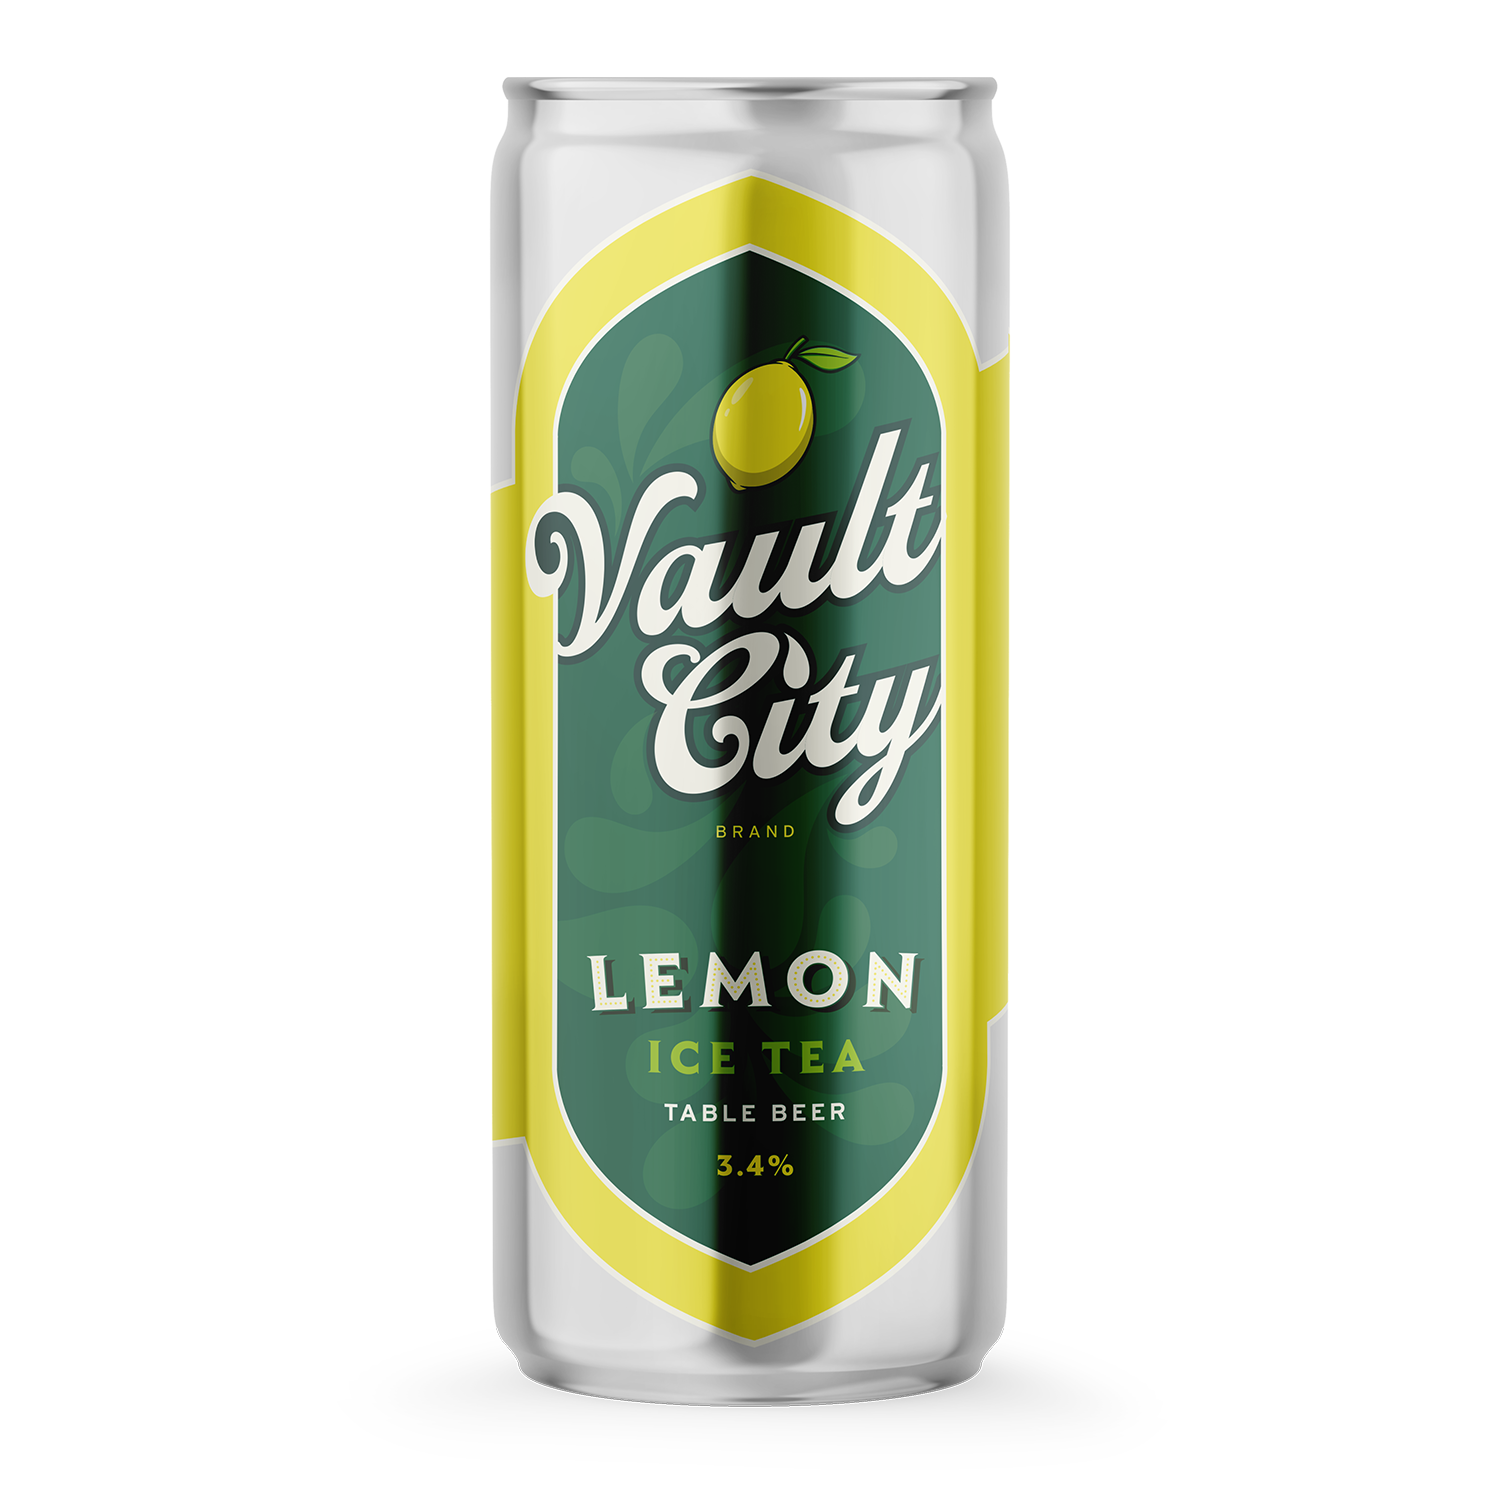 Vault City Lemon Ice Tea Table Beer